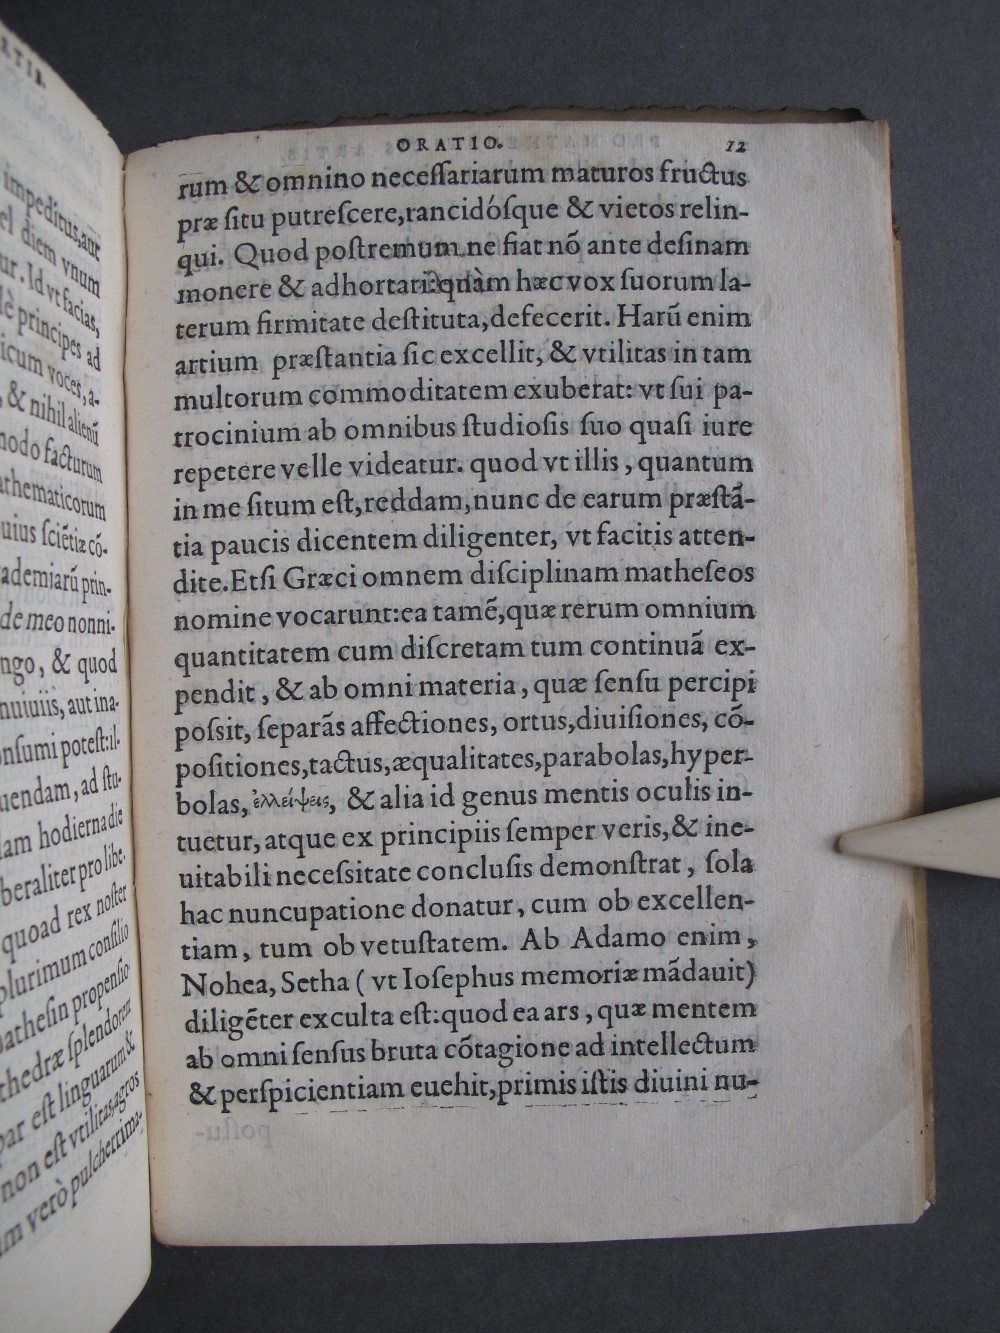 Folio 12 recto